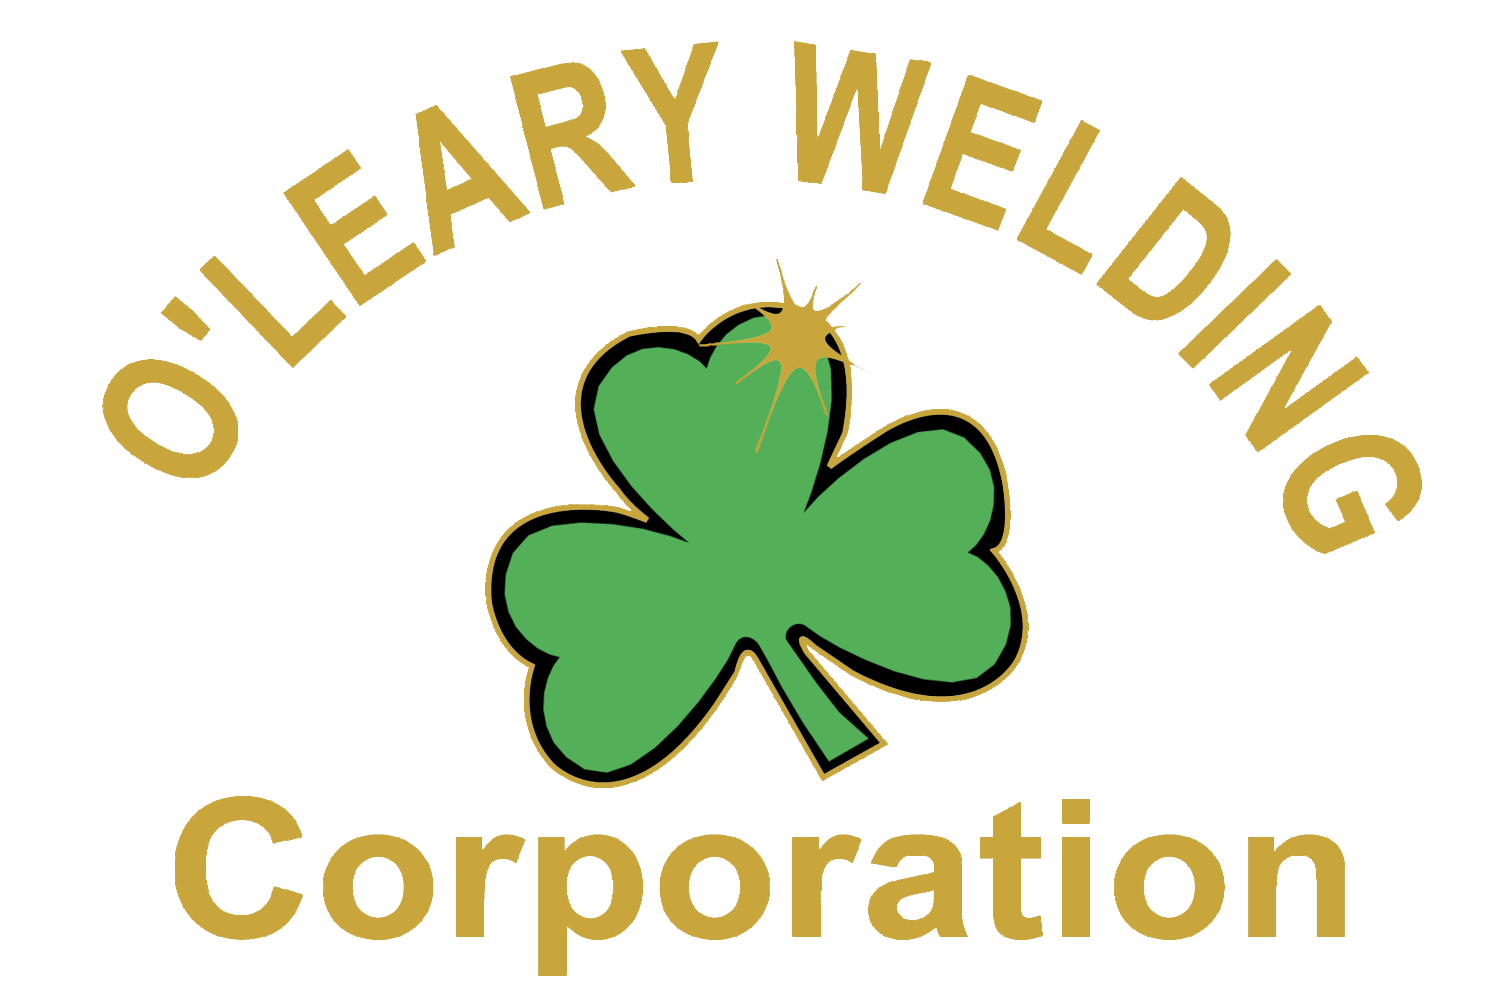 O'Leary Welding